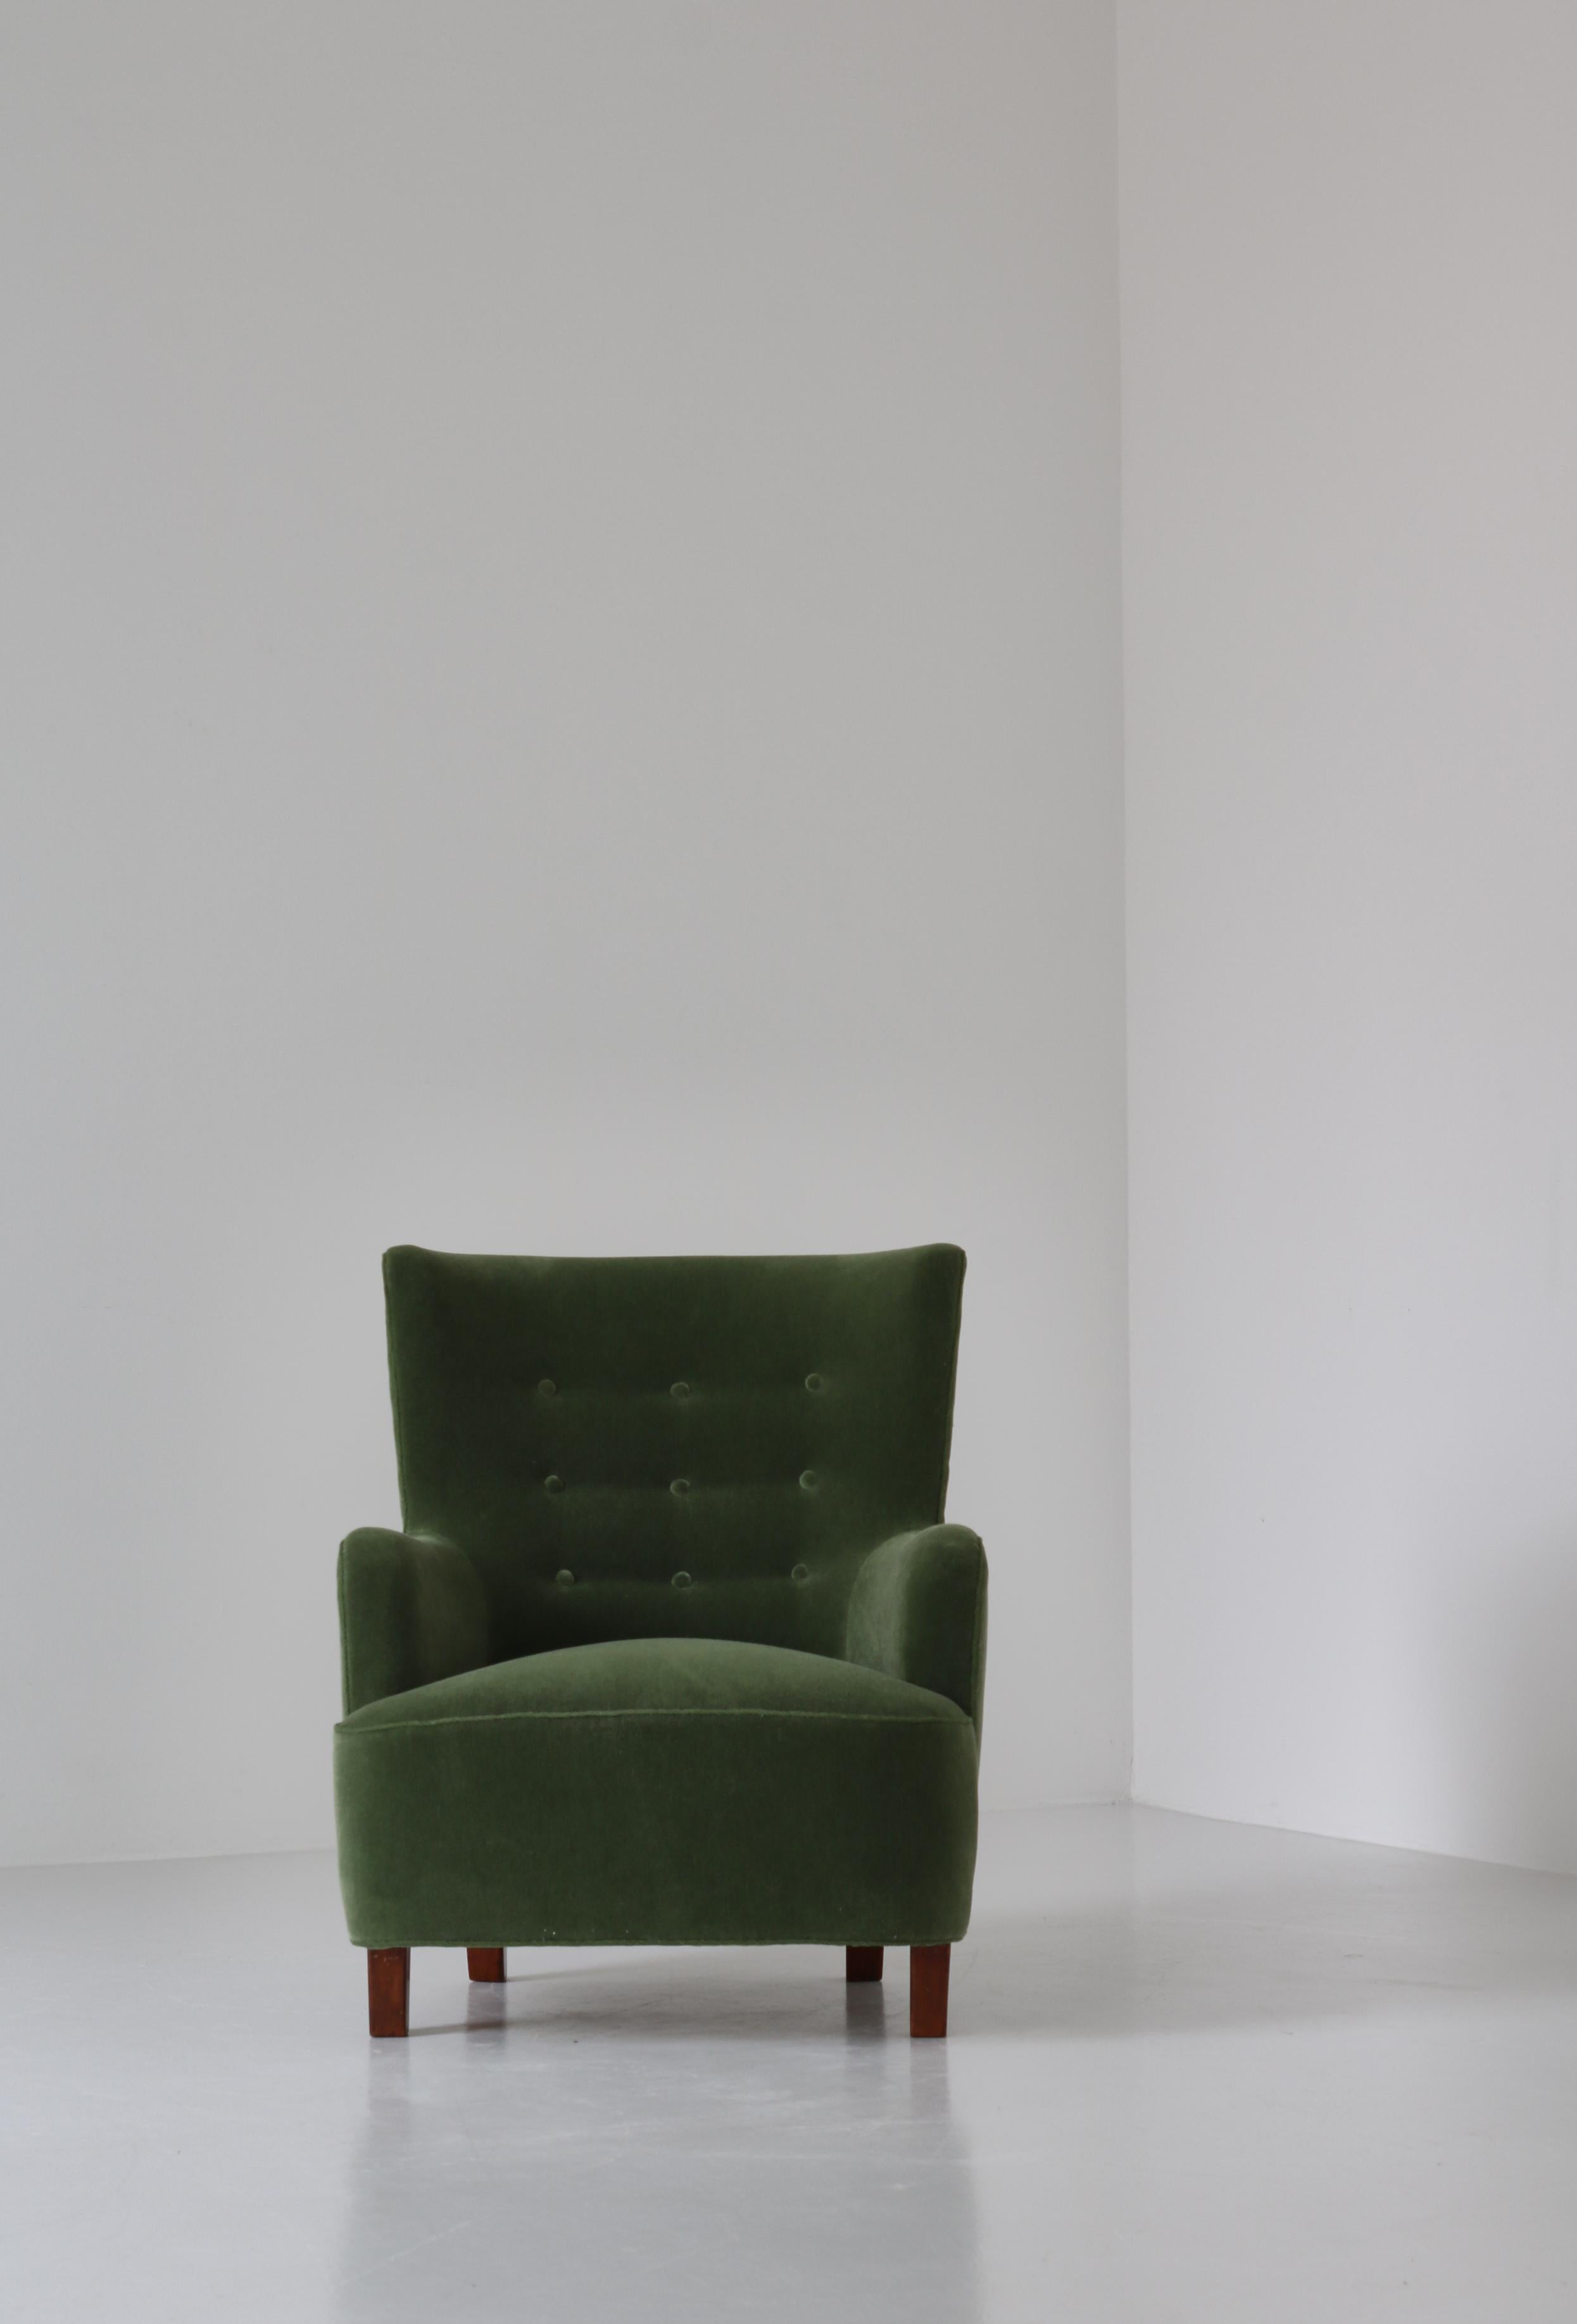 Mid-20th Century Scandinavian Modern Fritz Hansen Easy Chair Green Mohair Velvet fabric, 1940s For Sale